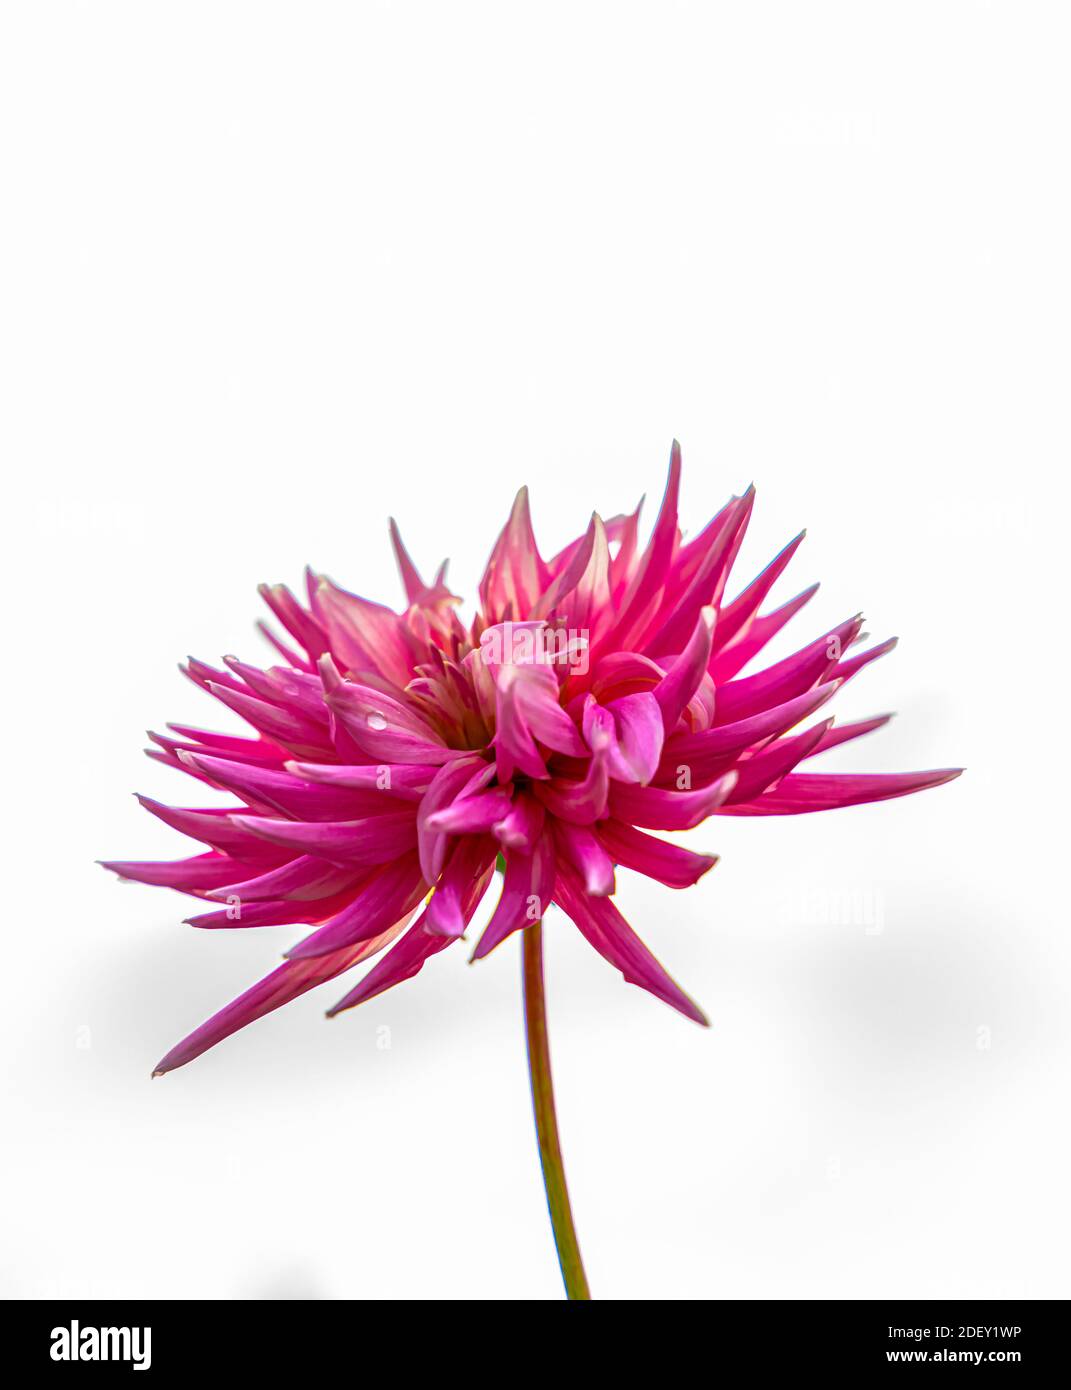 Bella rosa cactus dahlia fiore in piena fioritura. Isolato su sfondo bianco. Foto di alta qualità Foto Stock